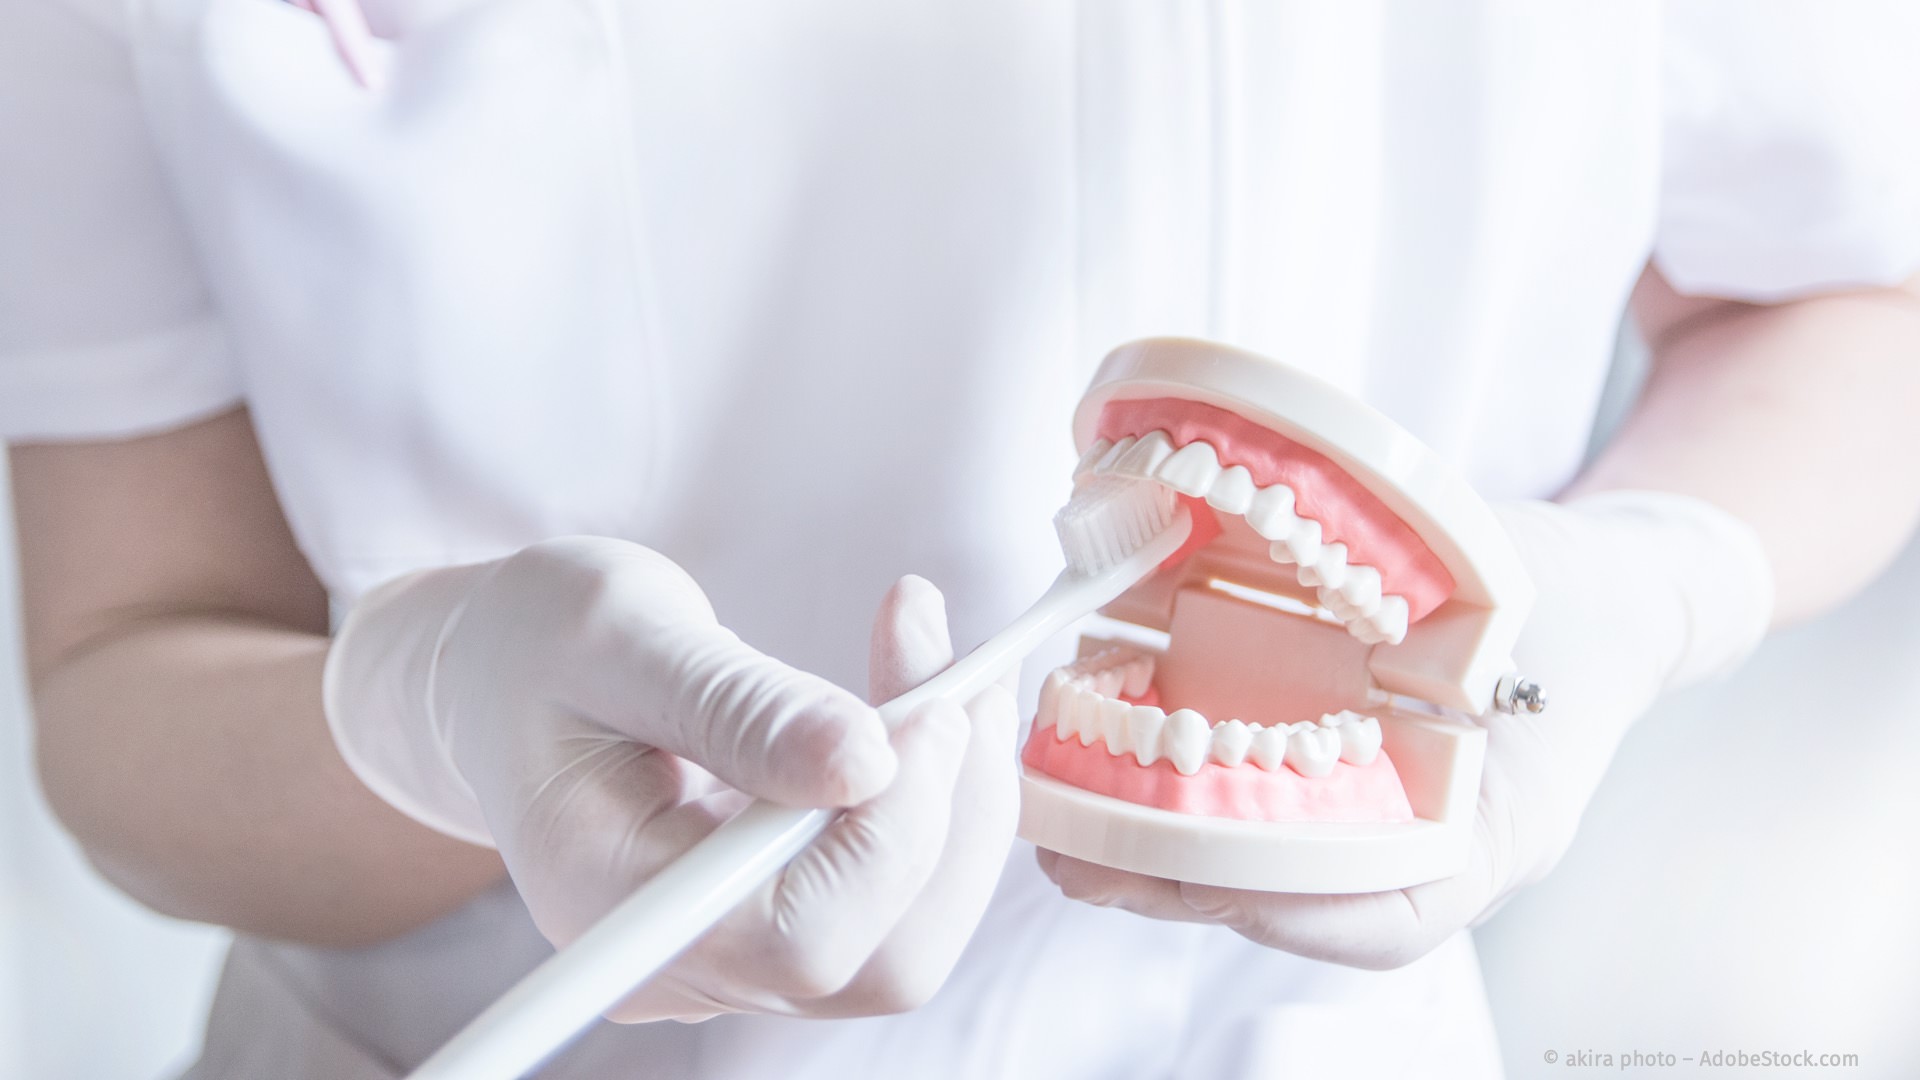 Profi-Tipps zur Mundpflege